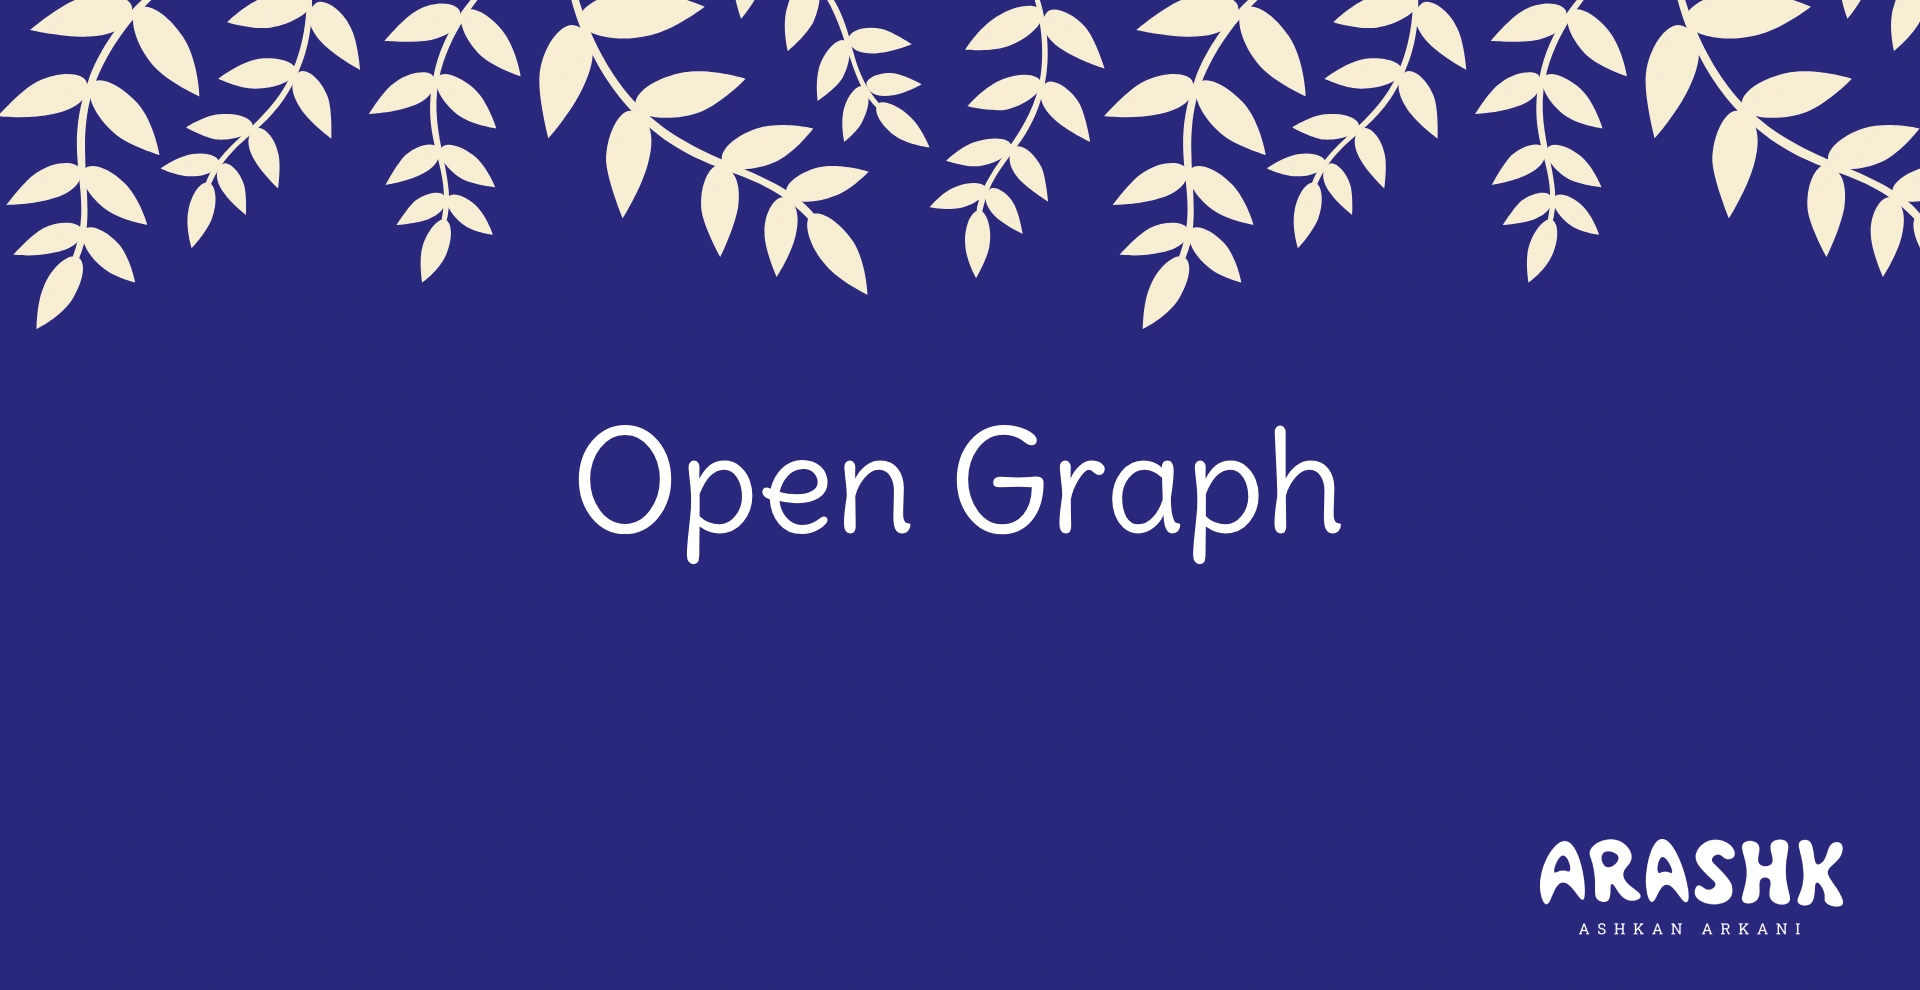 اپن گراف (Open Graph)